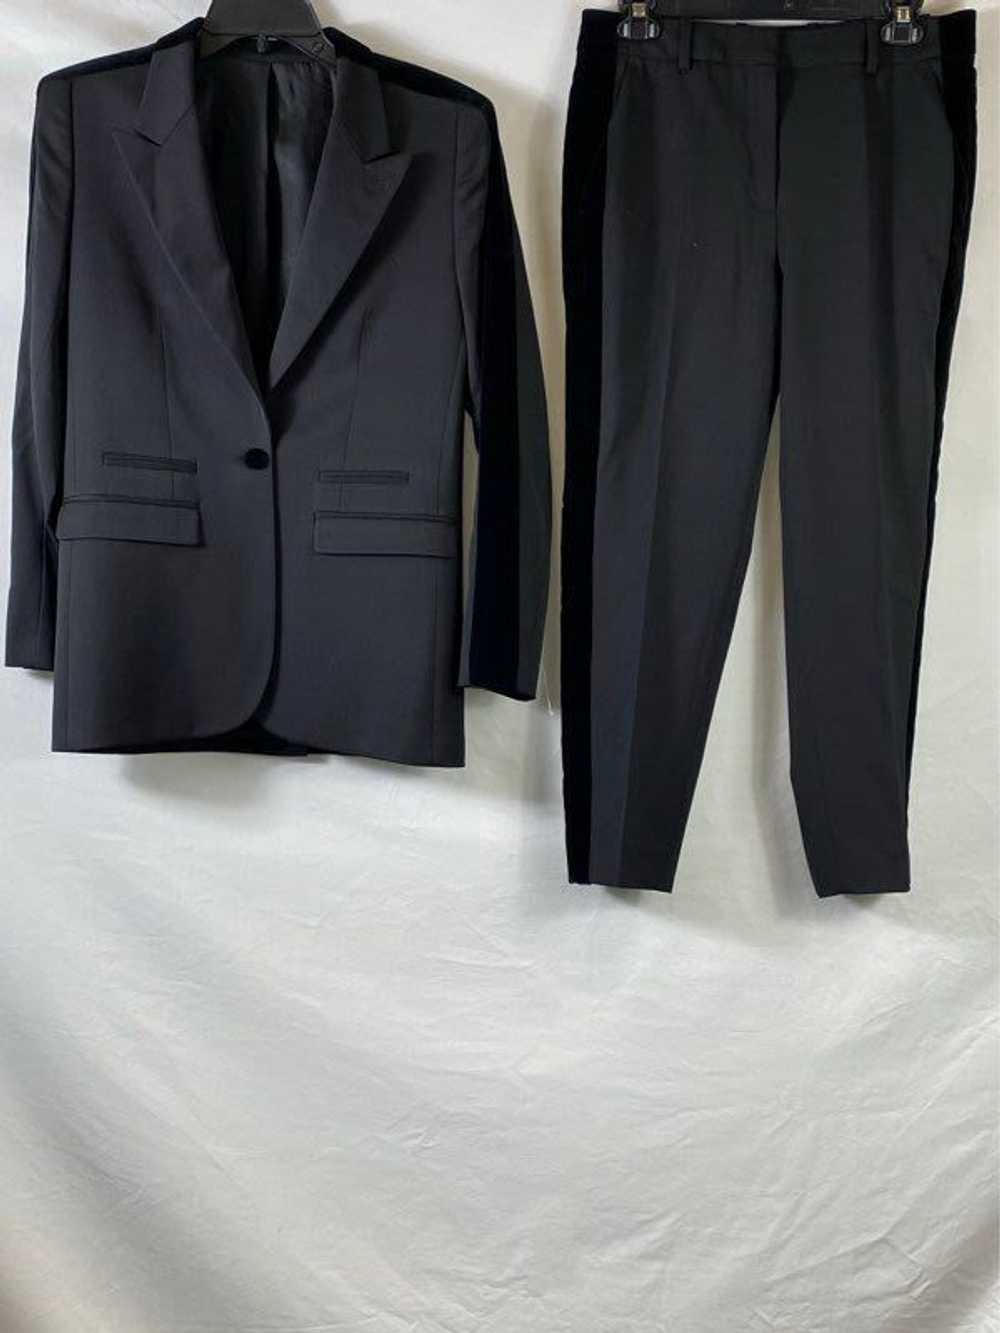 The Kooples Paris Black Suit - Size 34/36 - image 1